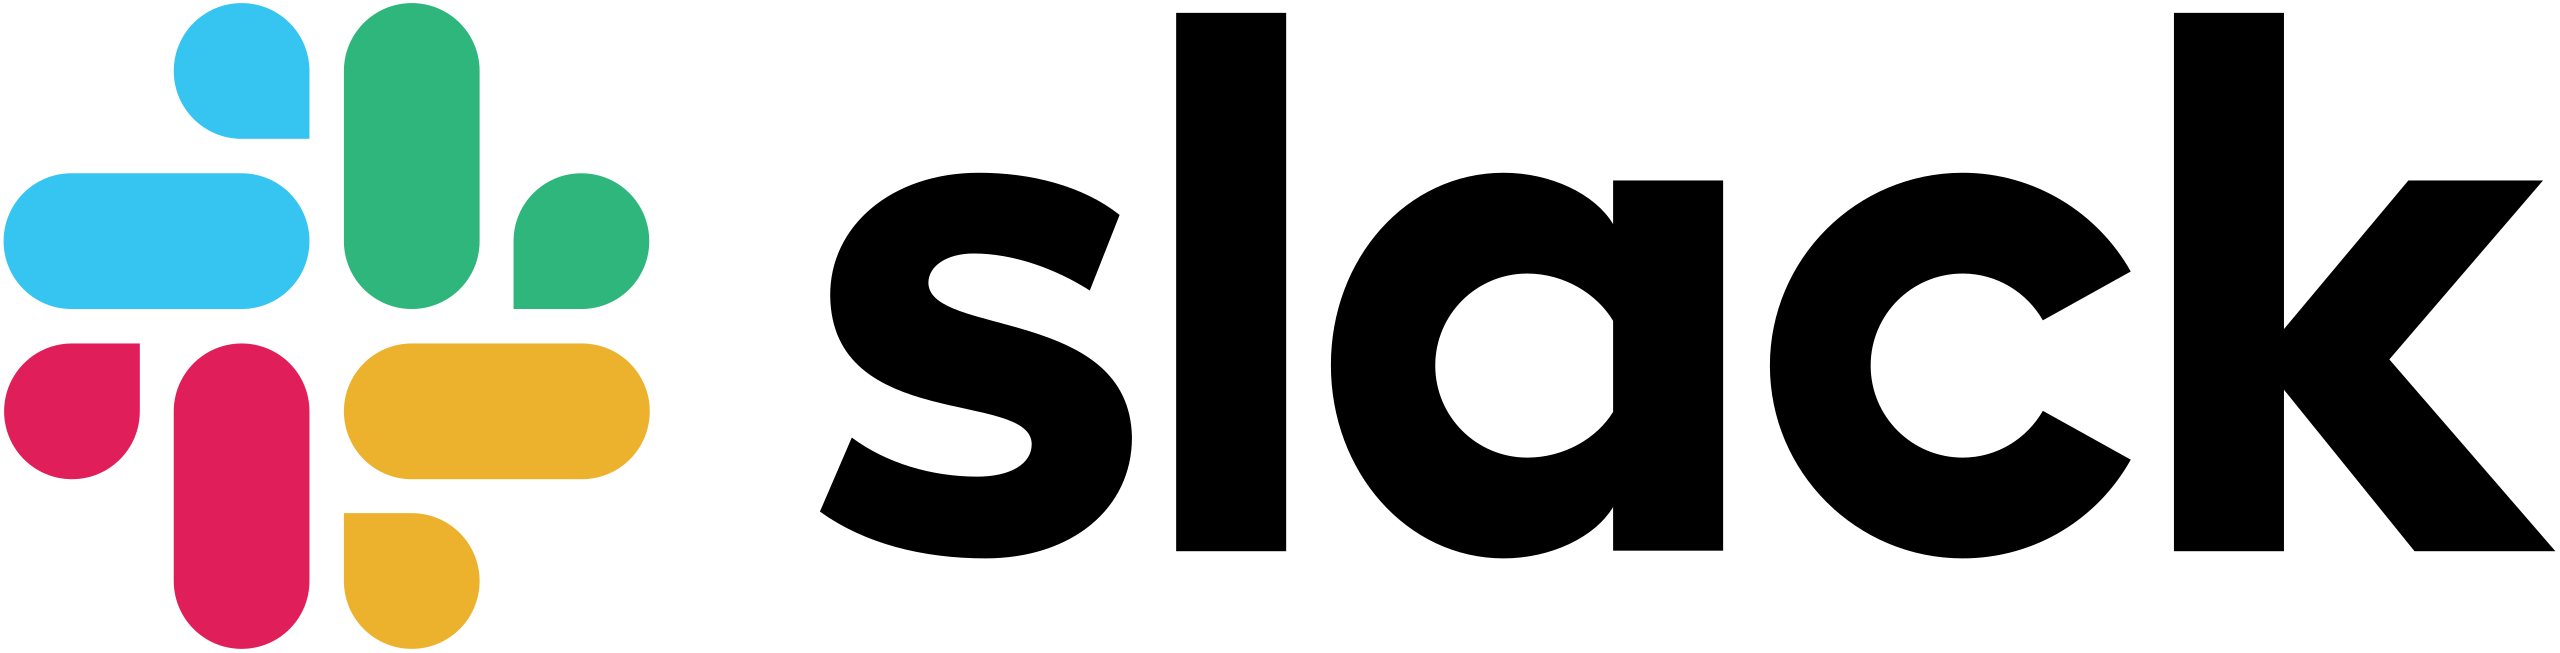 slack-logo-png-1-2